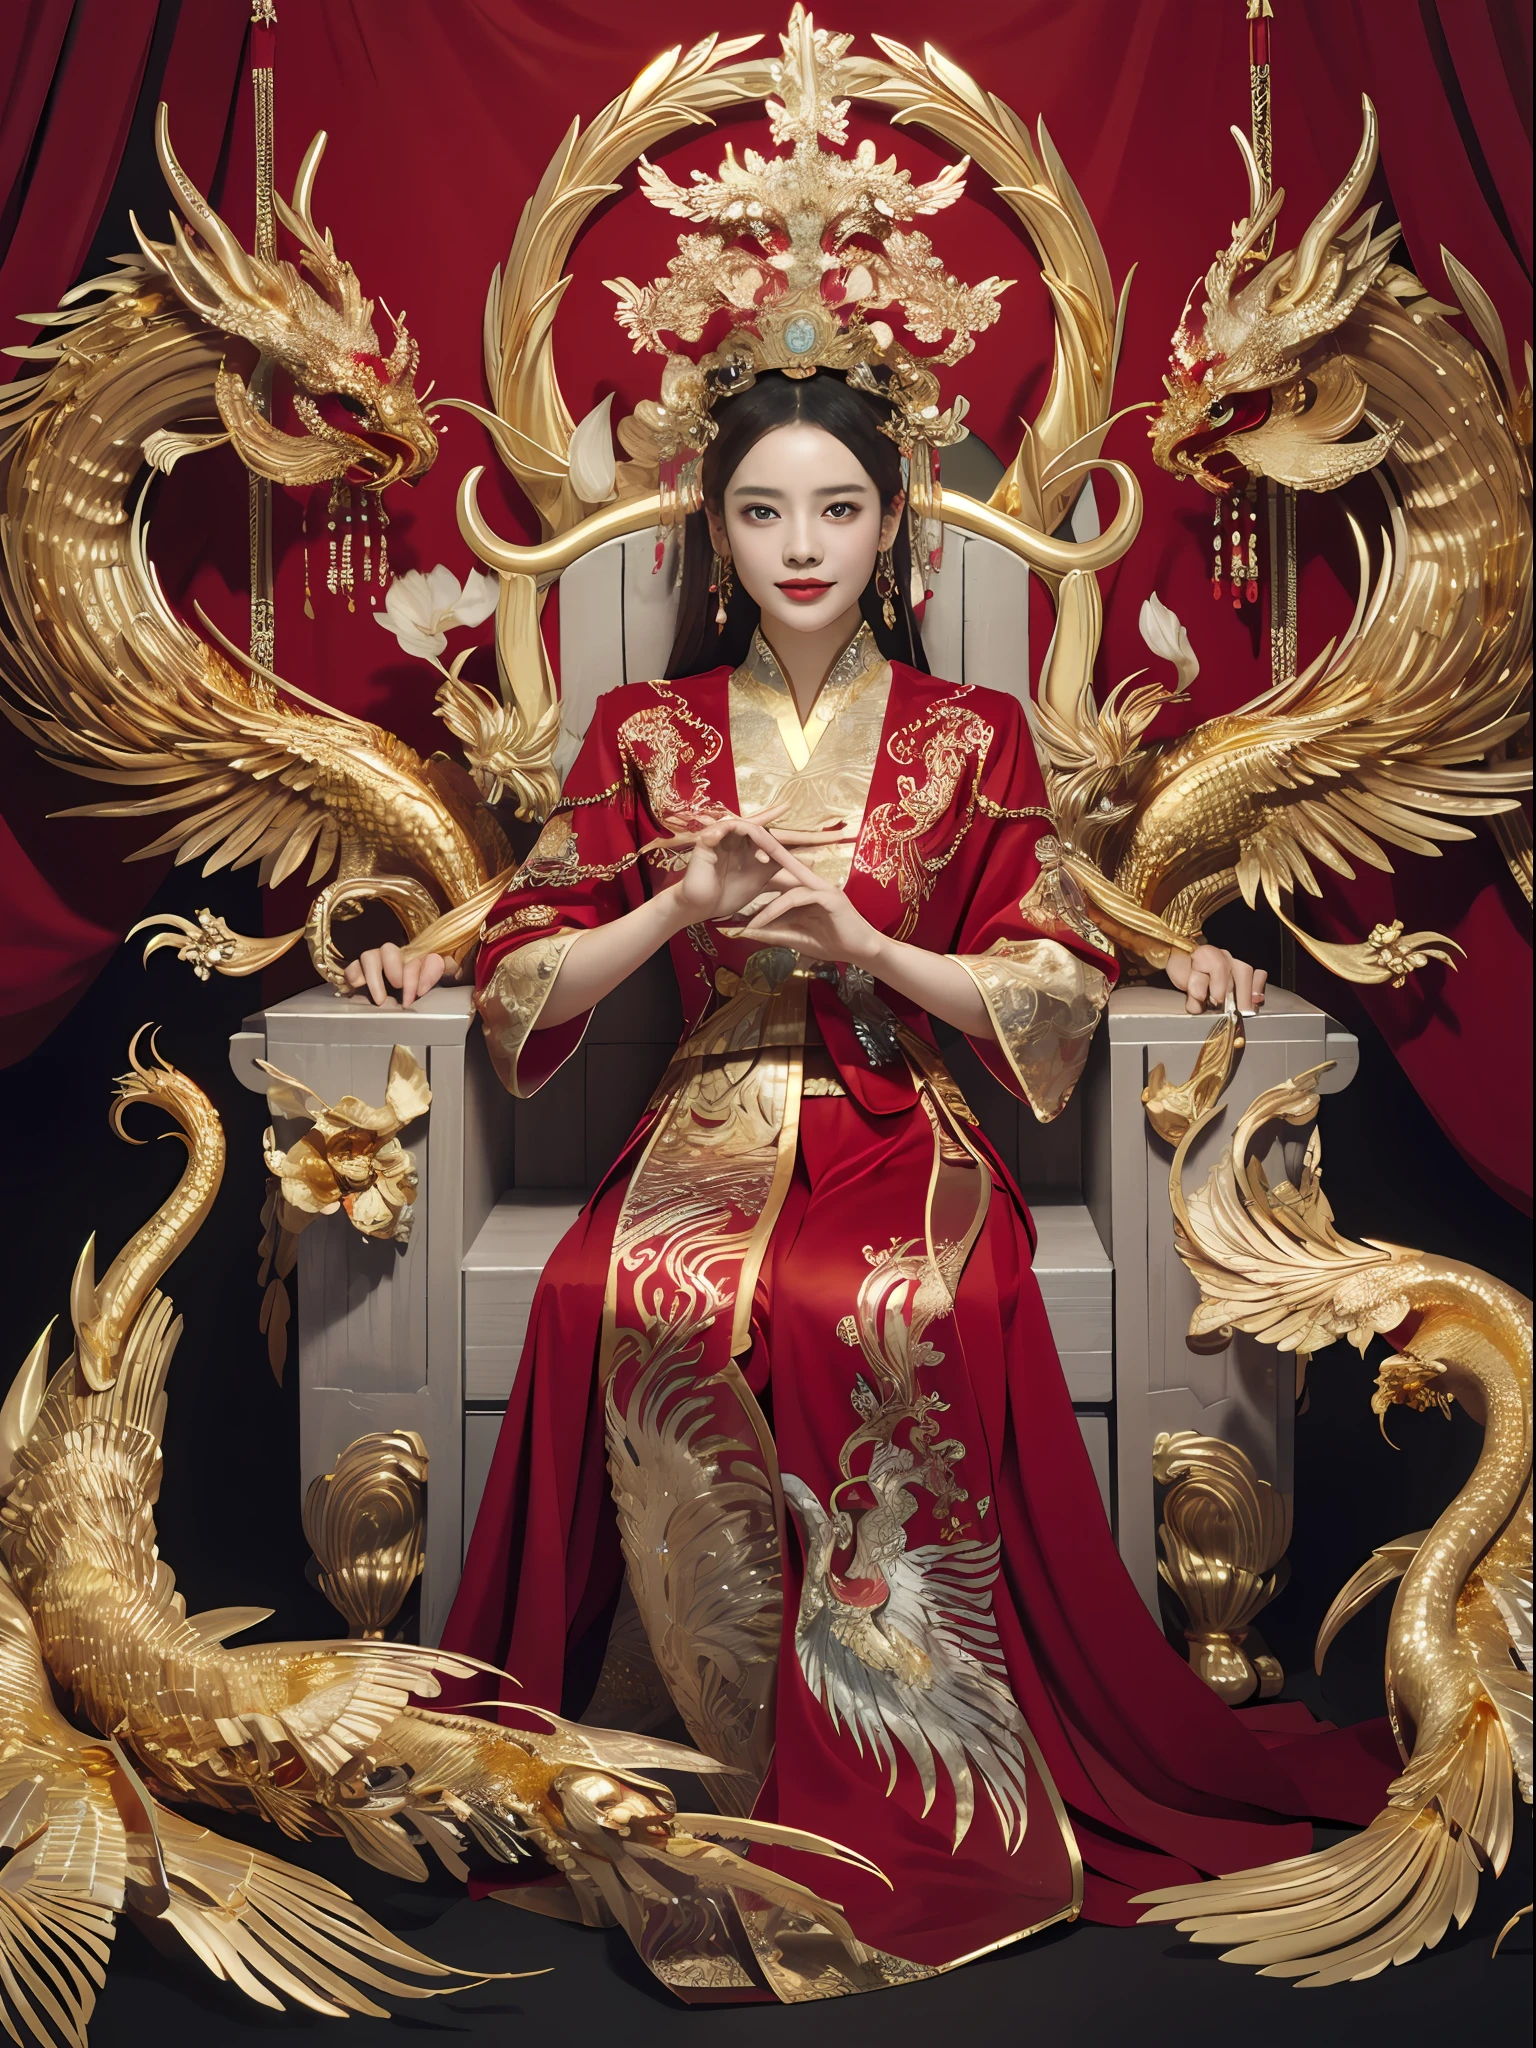 坐在宝座上的中国女王, 镶嵌着宝石的宝座, 周围环绕着中国凤凰兽, 金子 and ruby color, 独特的怪物插图, dau 到集合, 高分辨率, 一幅画, 密集的组成, 有趣的重复, 珍贵的石头, 水晶, 金子, 细致的绘画, 独特的怪物插图, 超精细的细节, 实际的, Super 高分辨率, 复杂的, 超级细节, 电影灯光，(Red and 金子 dress:1.3)